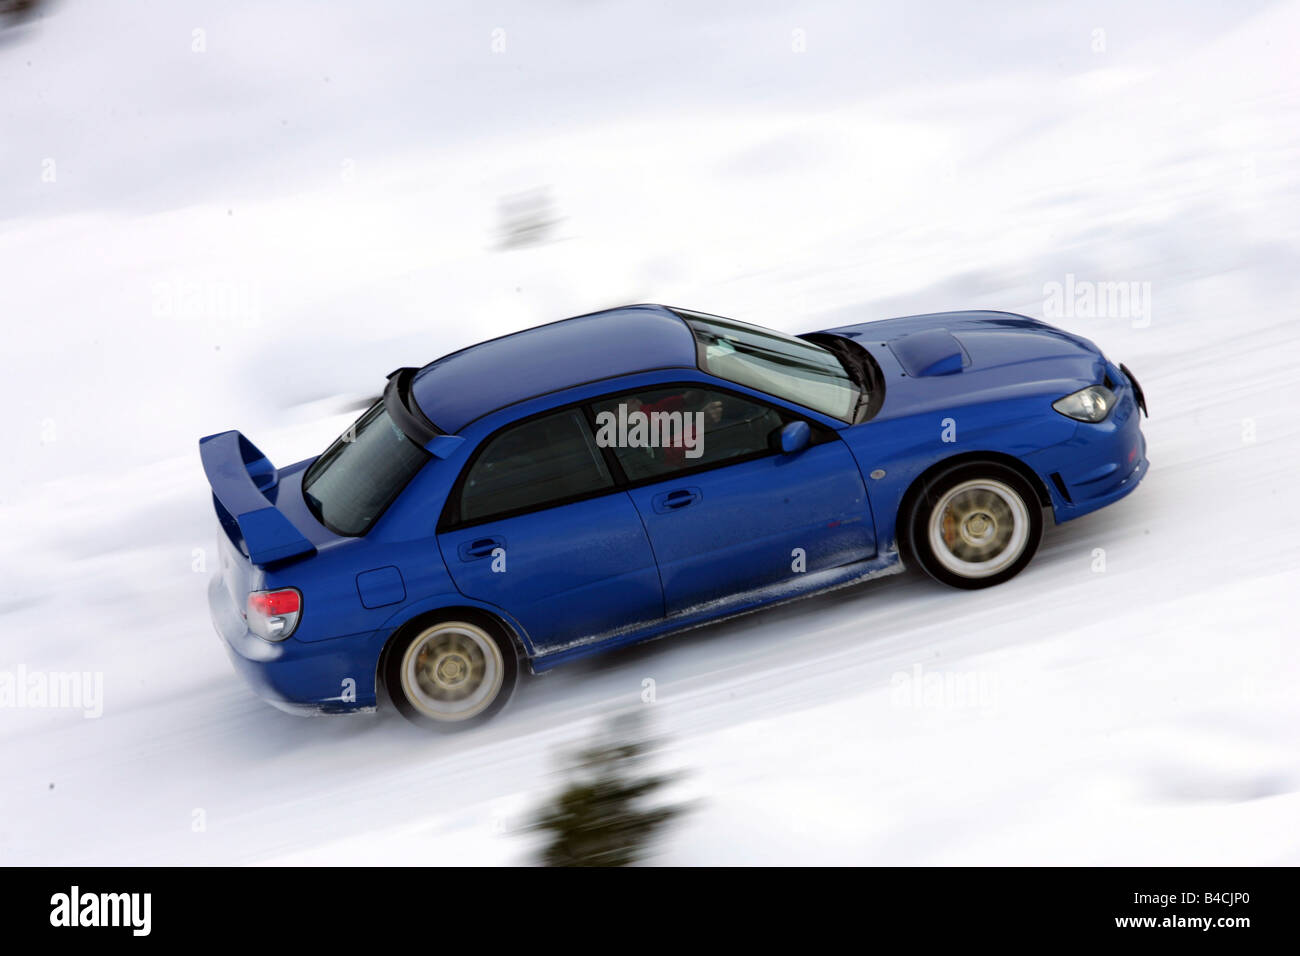 Subaru Impreza 2.5 WRX STi, modello anno 2005-, blu in movimento, vista laterale, neve inverno Foto Stock